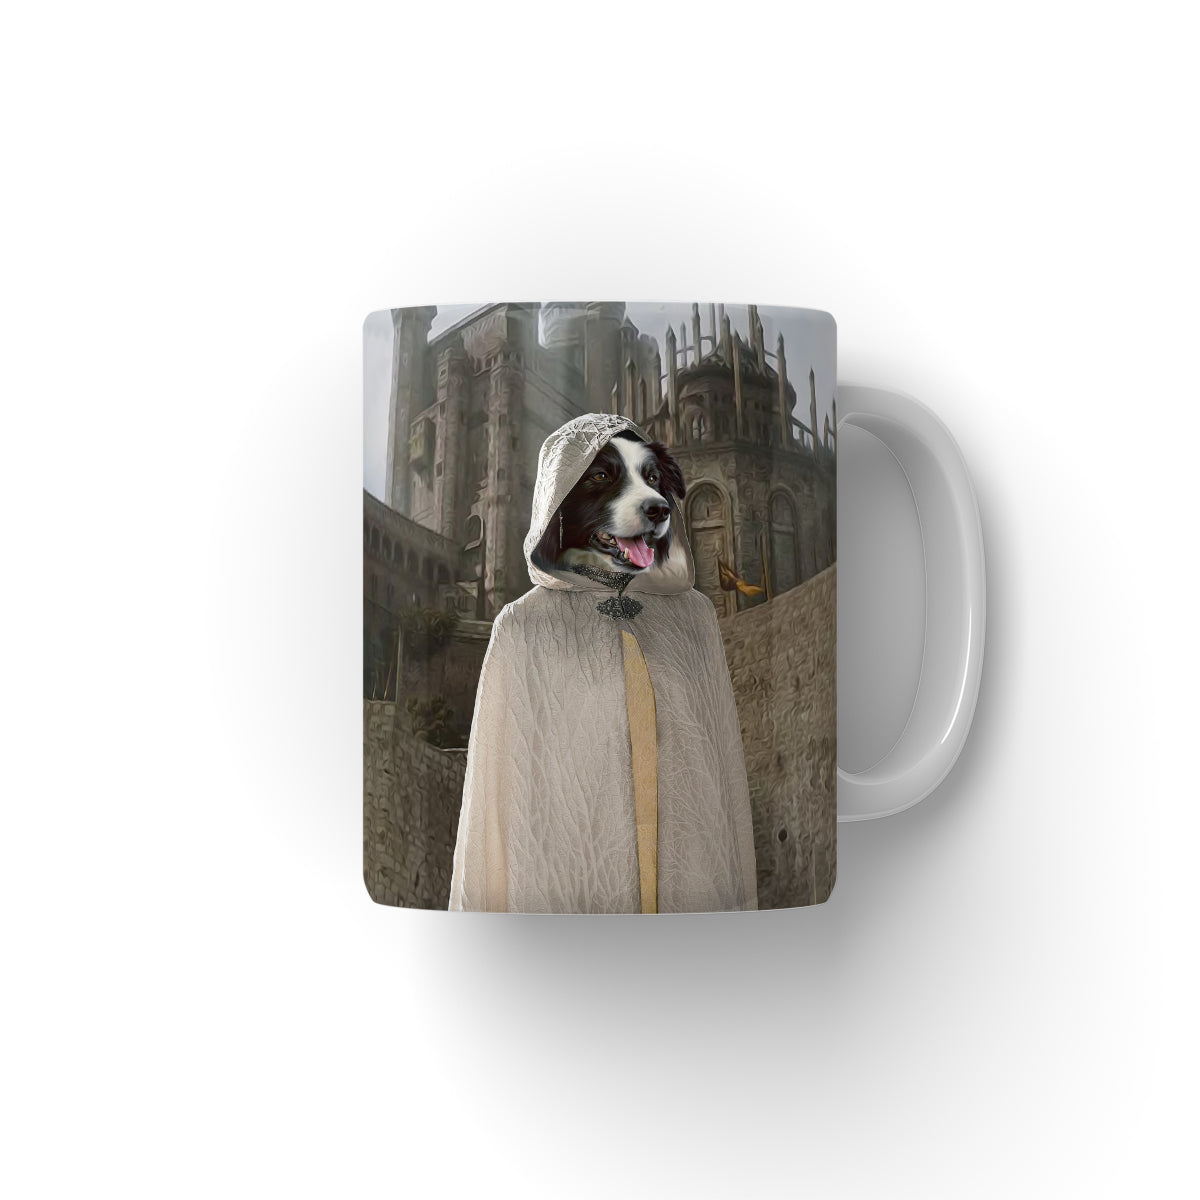 pet mug portraits pet photo studio, portrait of your dog, historical pet portraits uk, portrait of dog, dog on mug, personalised dog mug uk, pawandglory, paw & glory